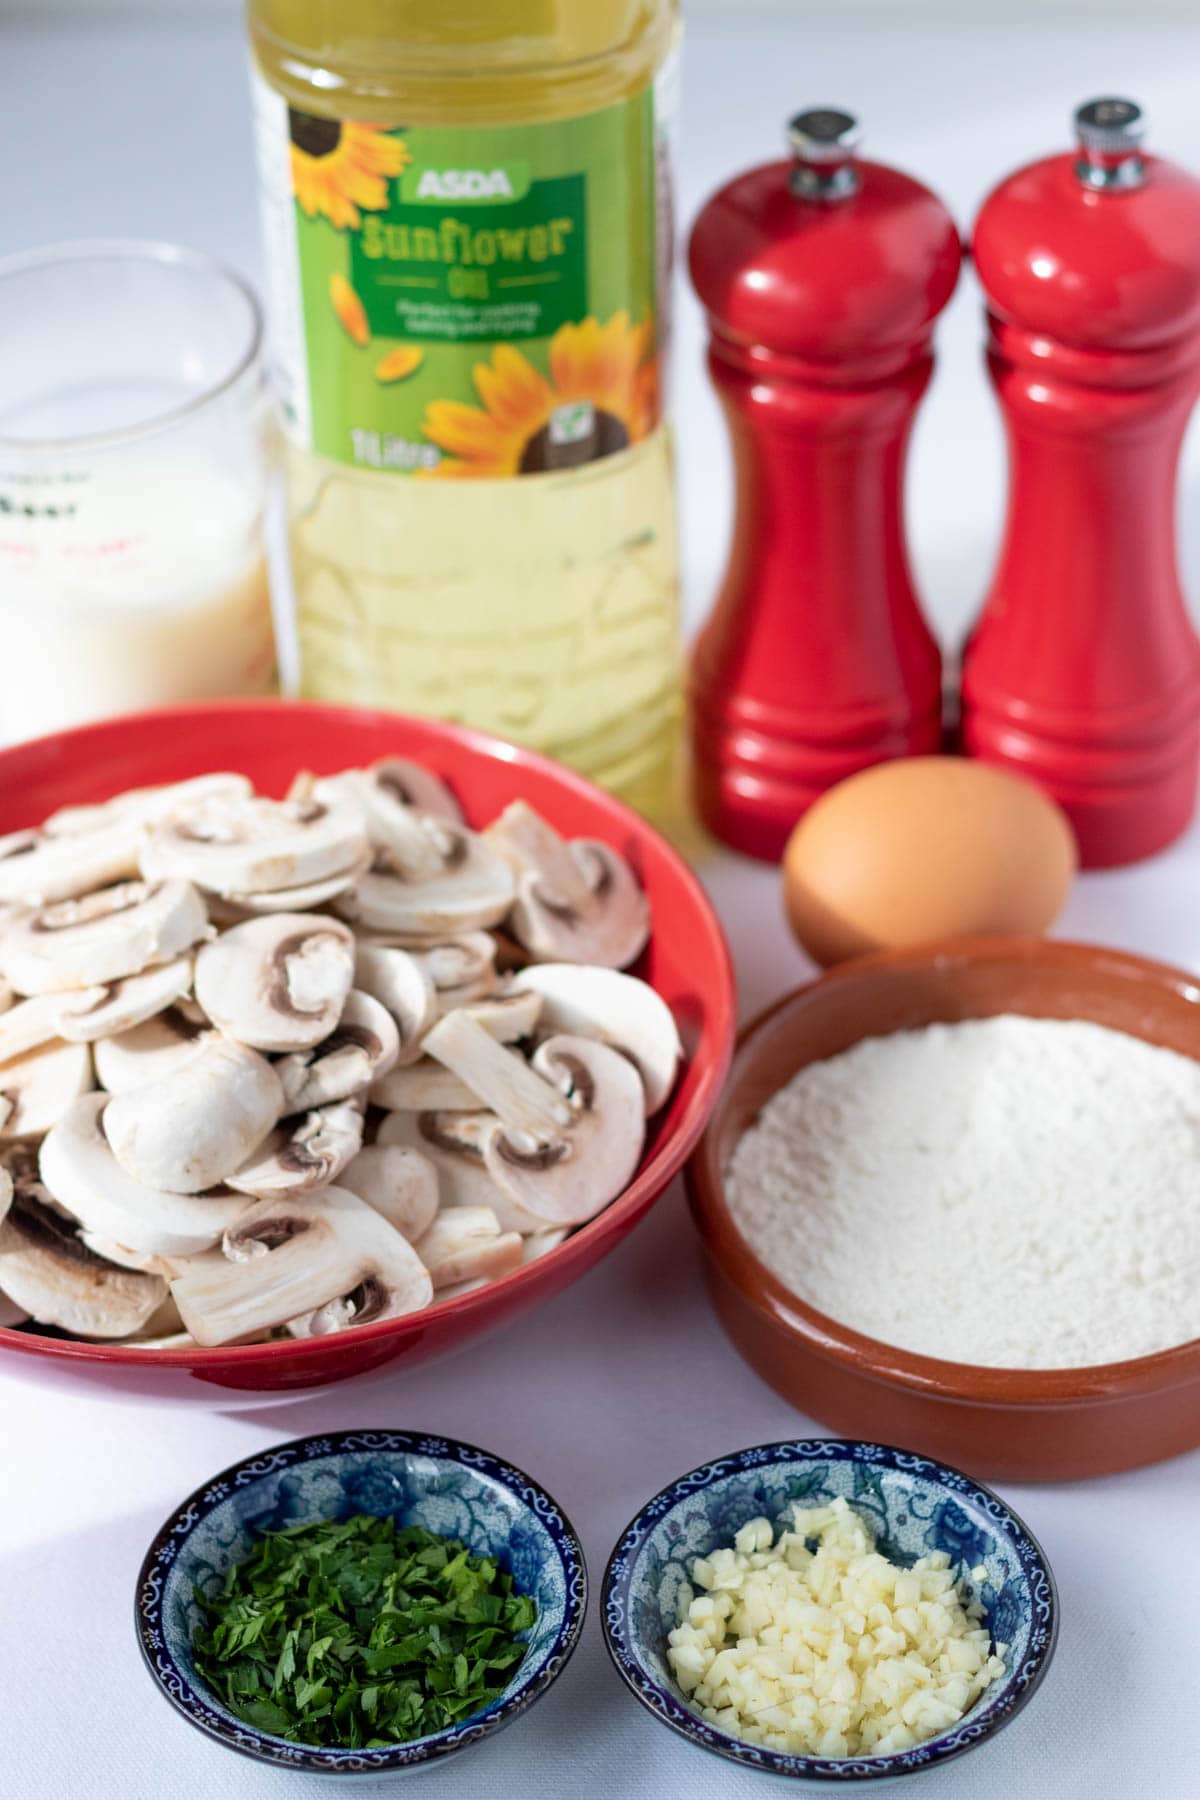 Savoury mushroom pancakes recipe ingredients.